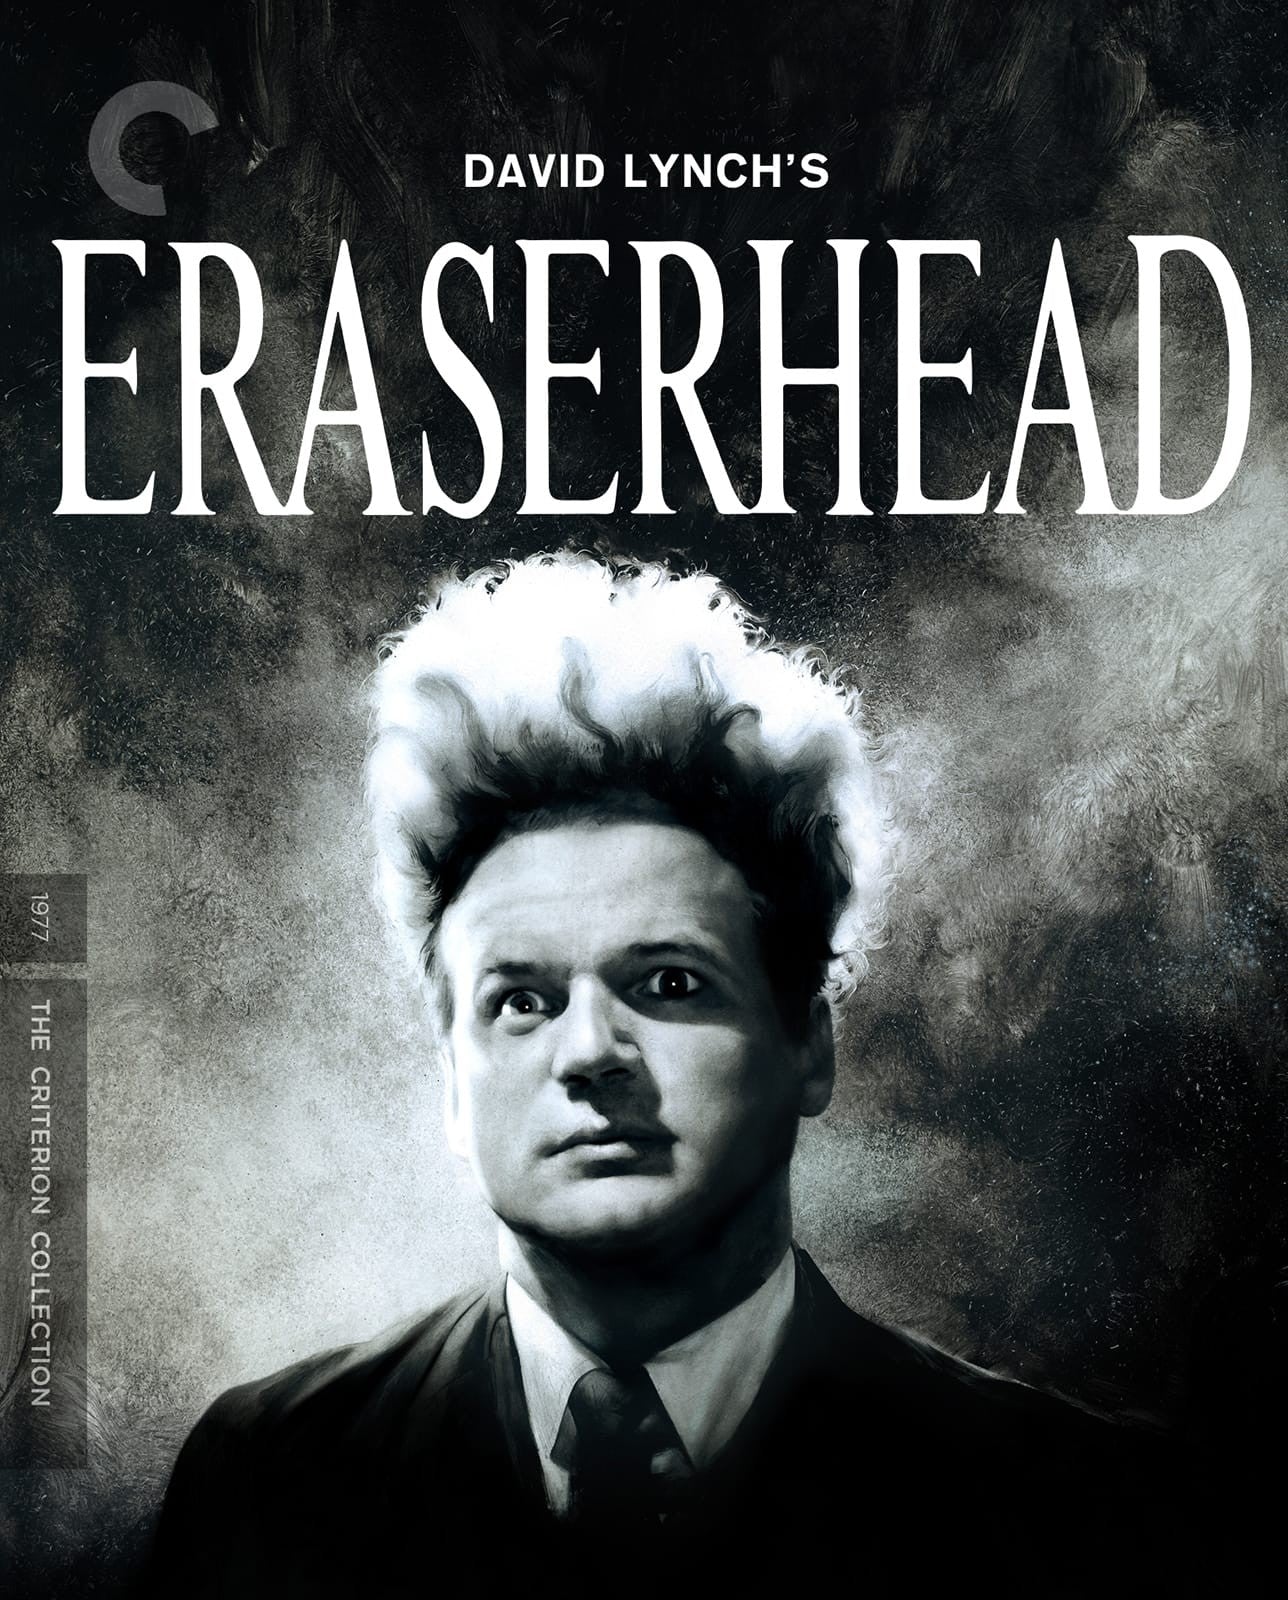 Lynch, David - Eraserhead - Blu-Ray